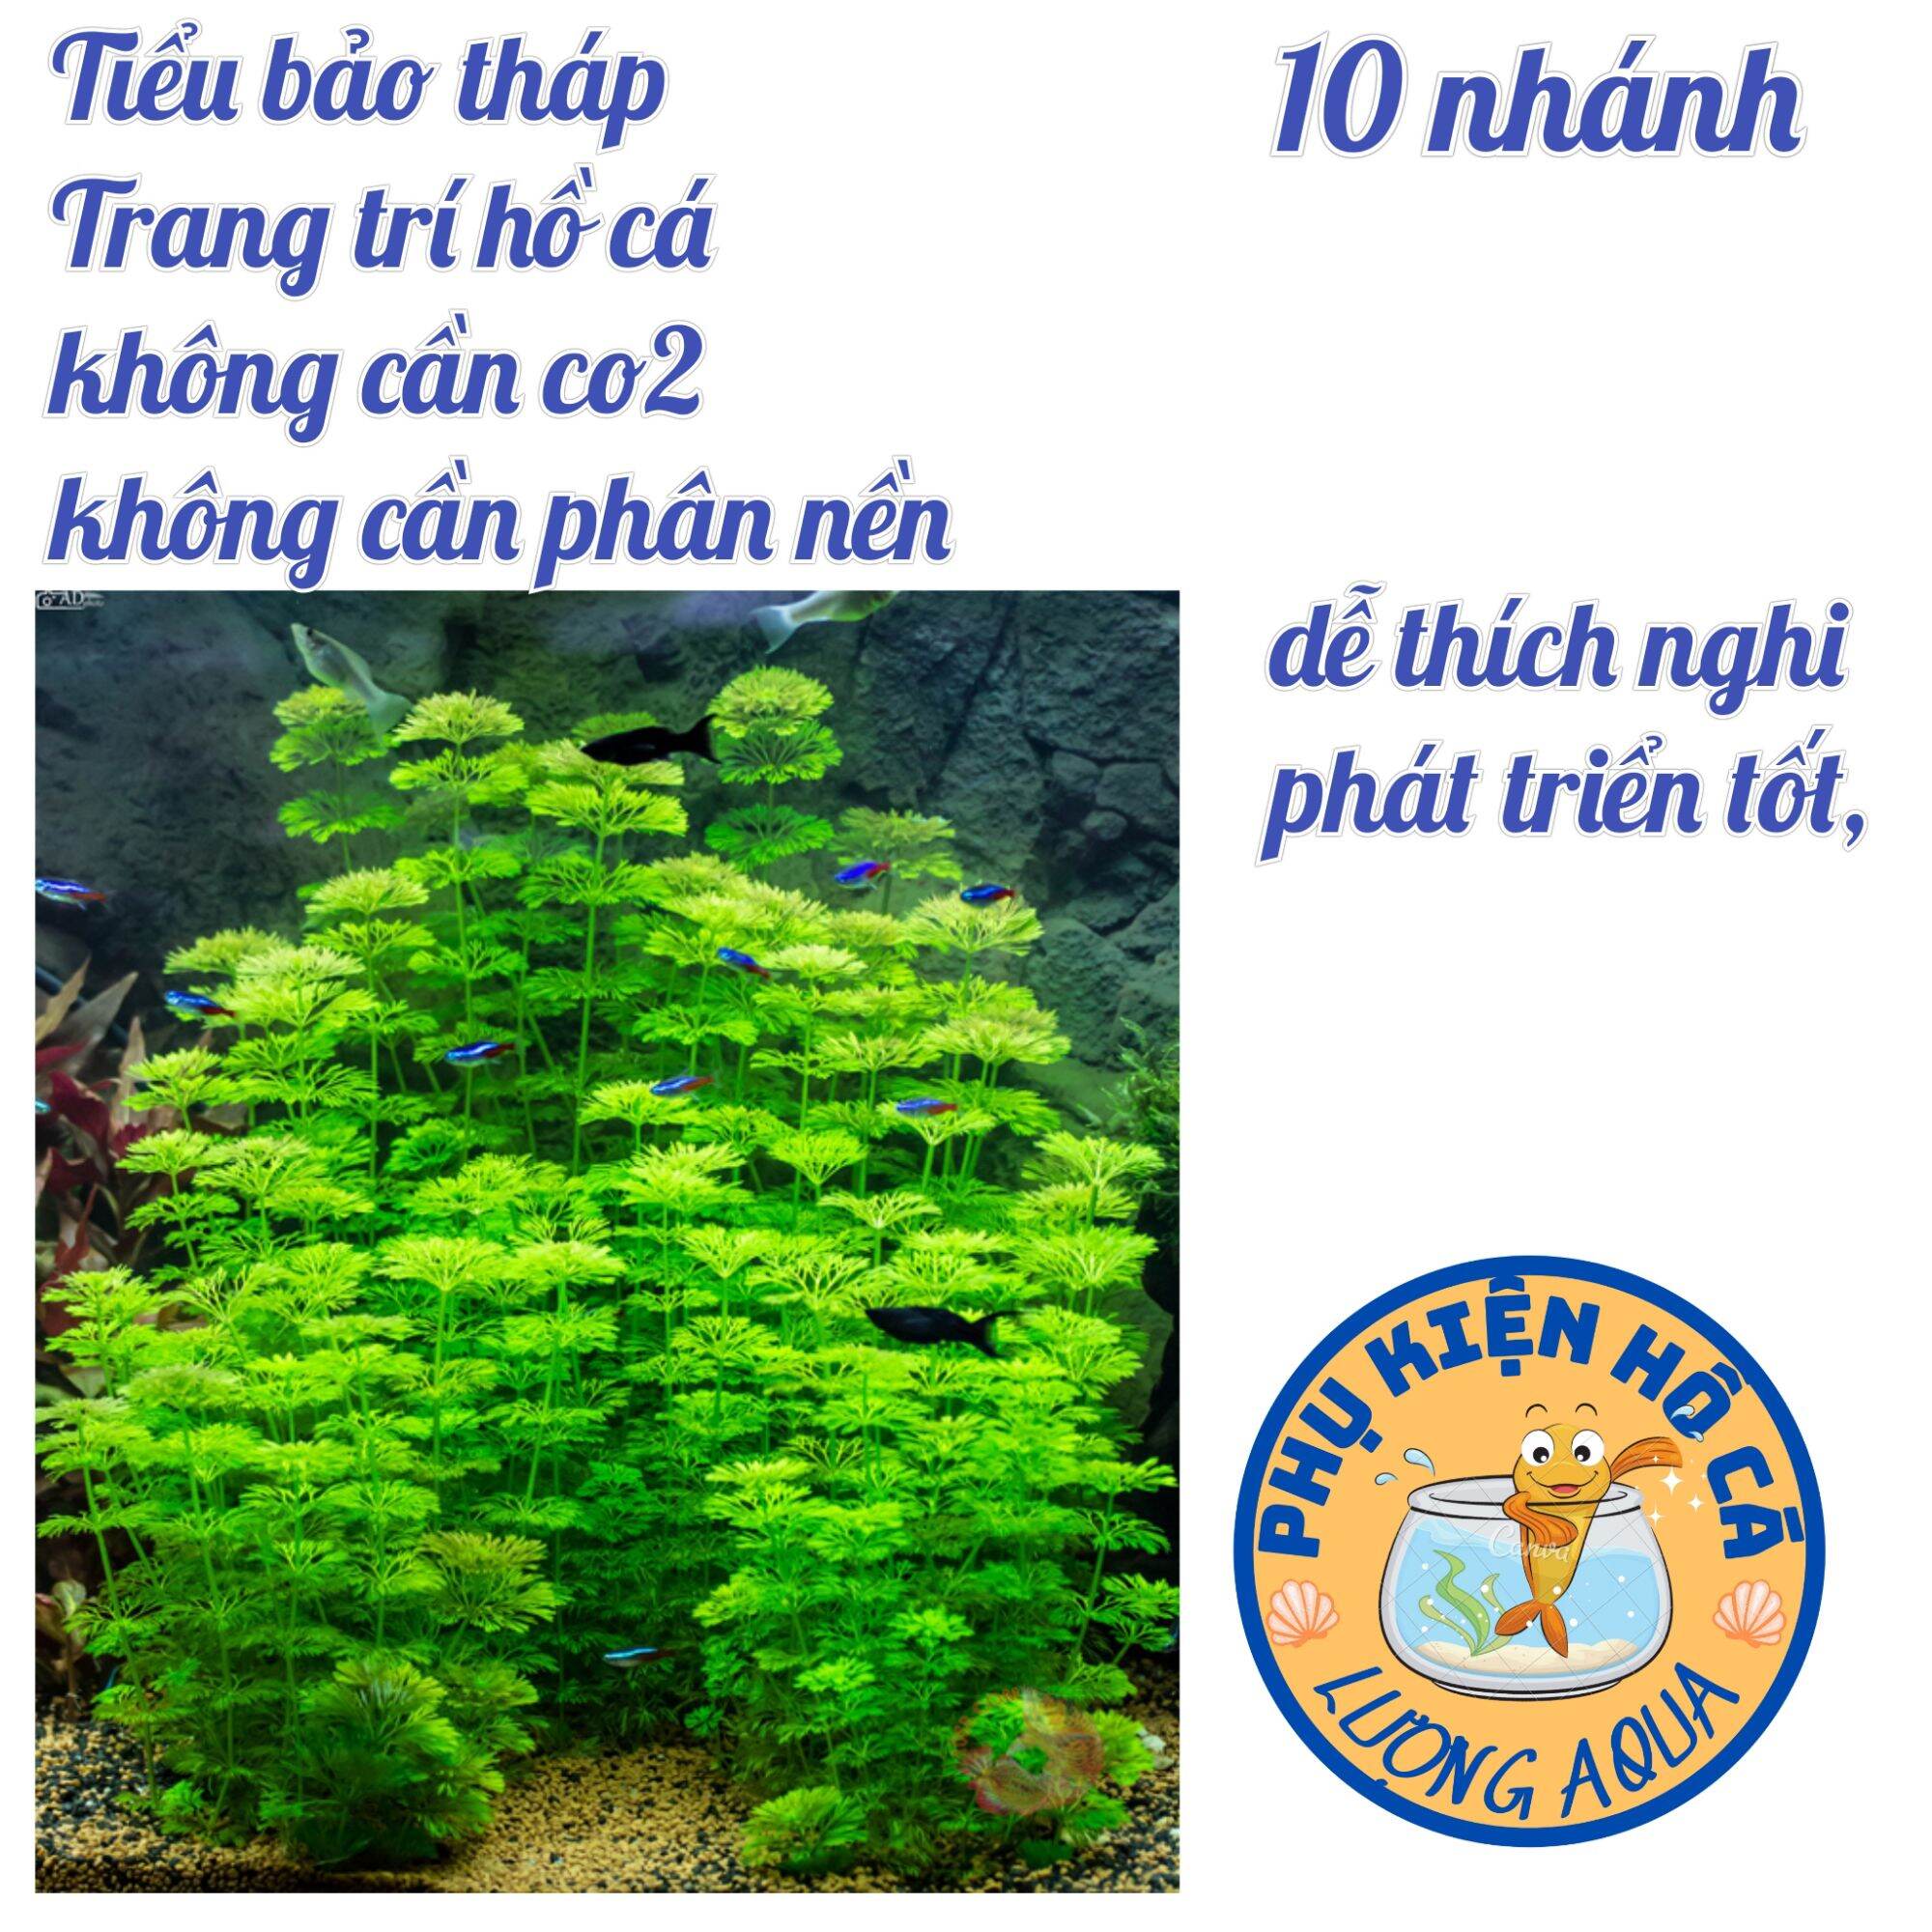 10 nhánh cây thủy sinh Tiểu bảo tháp